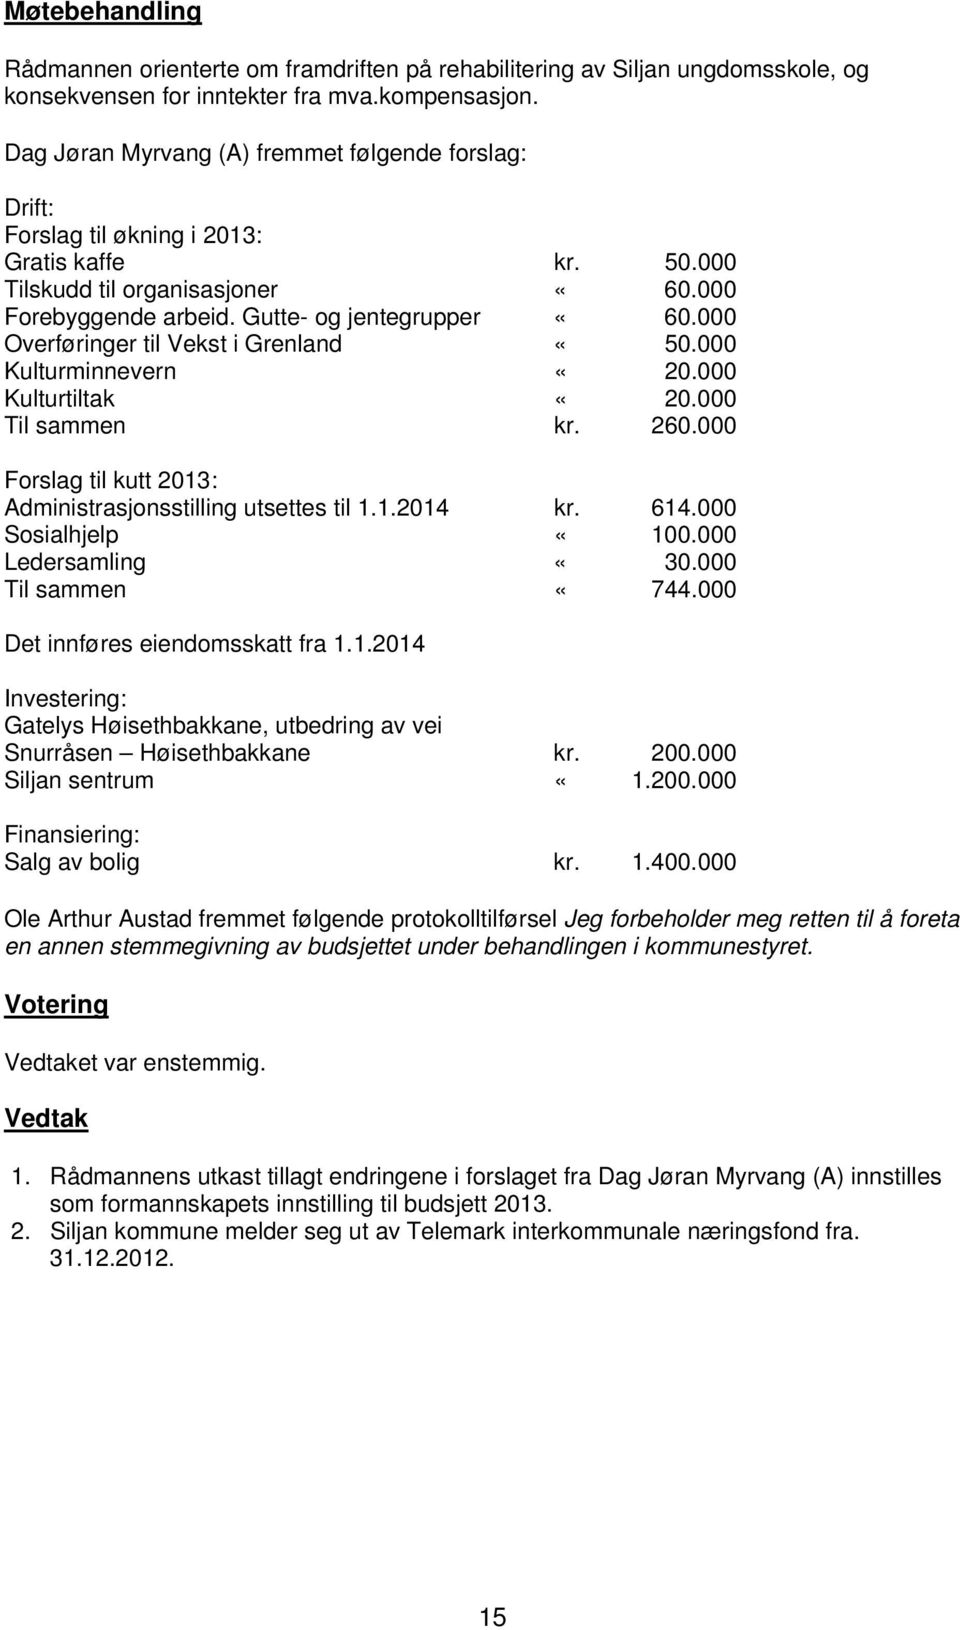 000 Overføringer til Vekst i Grenland «50.000 Kulturminnevern «20.000 Kulturtiltak «20.000 Til sammen kr. 260.000 Forslag til kutt 2013: Administrasjonsstilling utsettes til 1.1.2014 kr. 614.